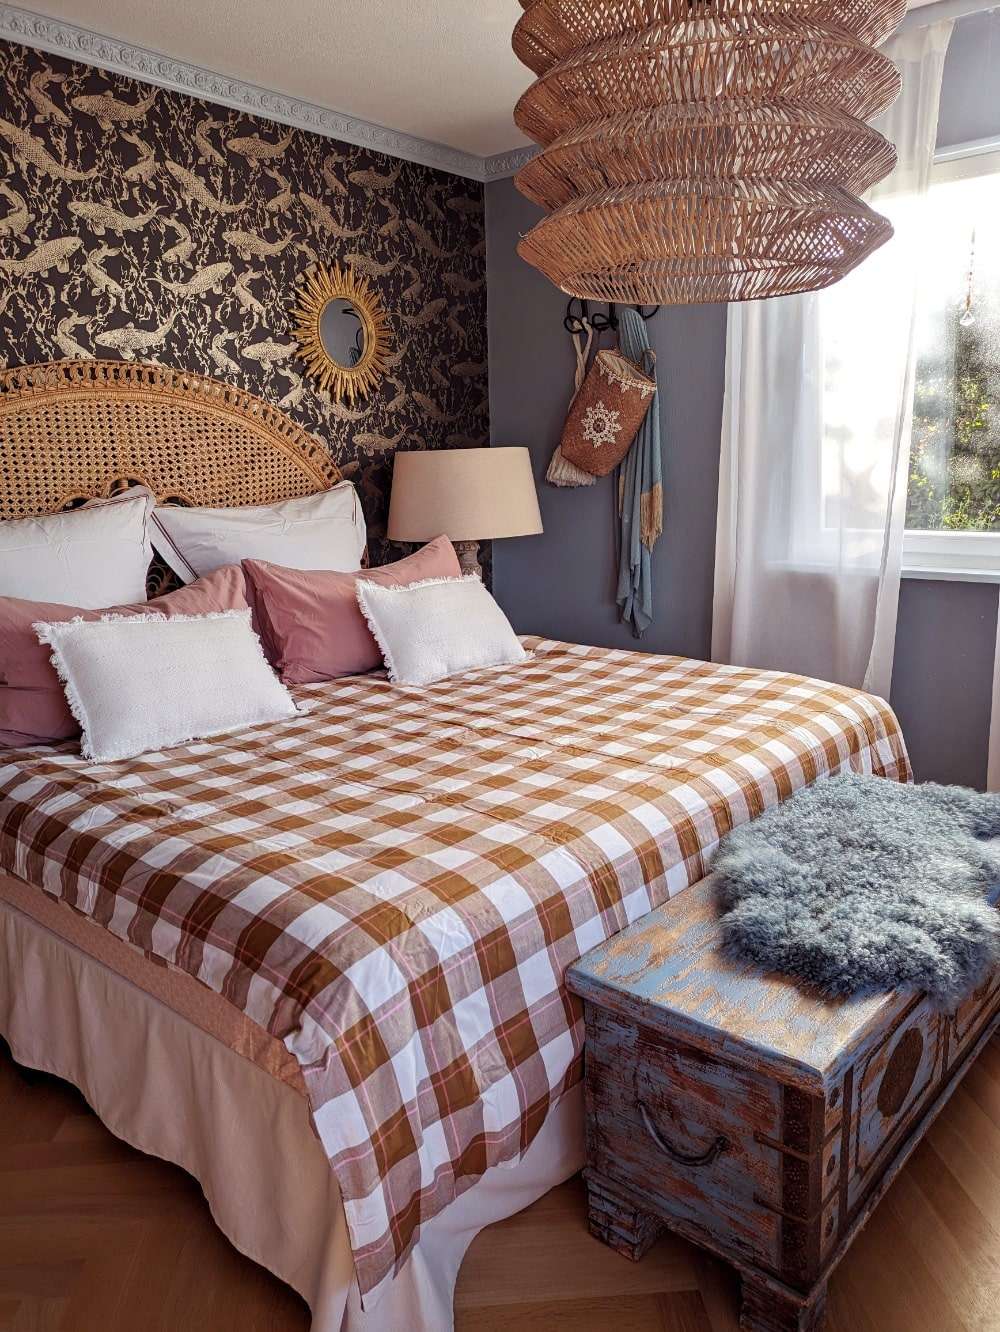 Bett mit Rattankopfteil vor Fischtapete. Eine blaue indische Truhe steht am Fußende des Bettes.